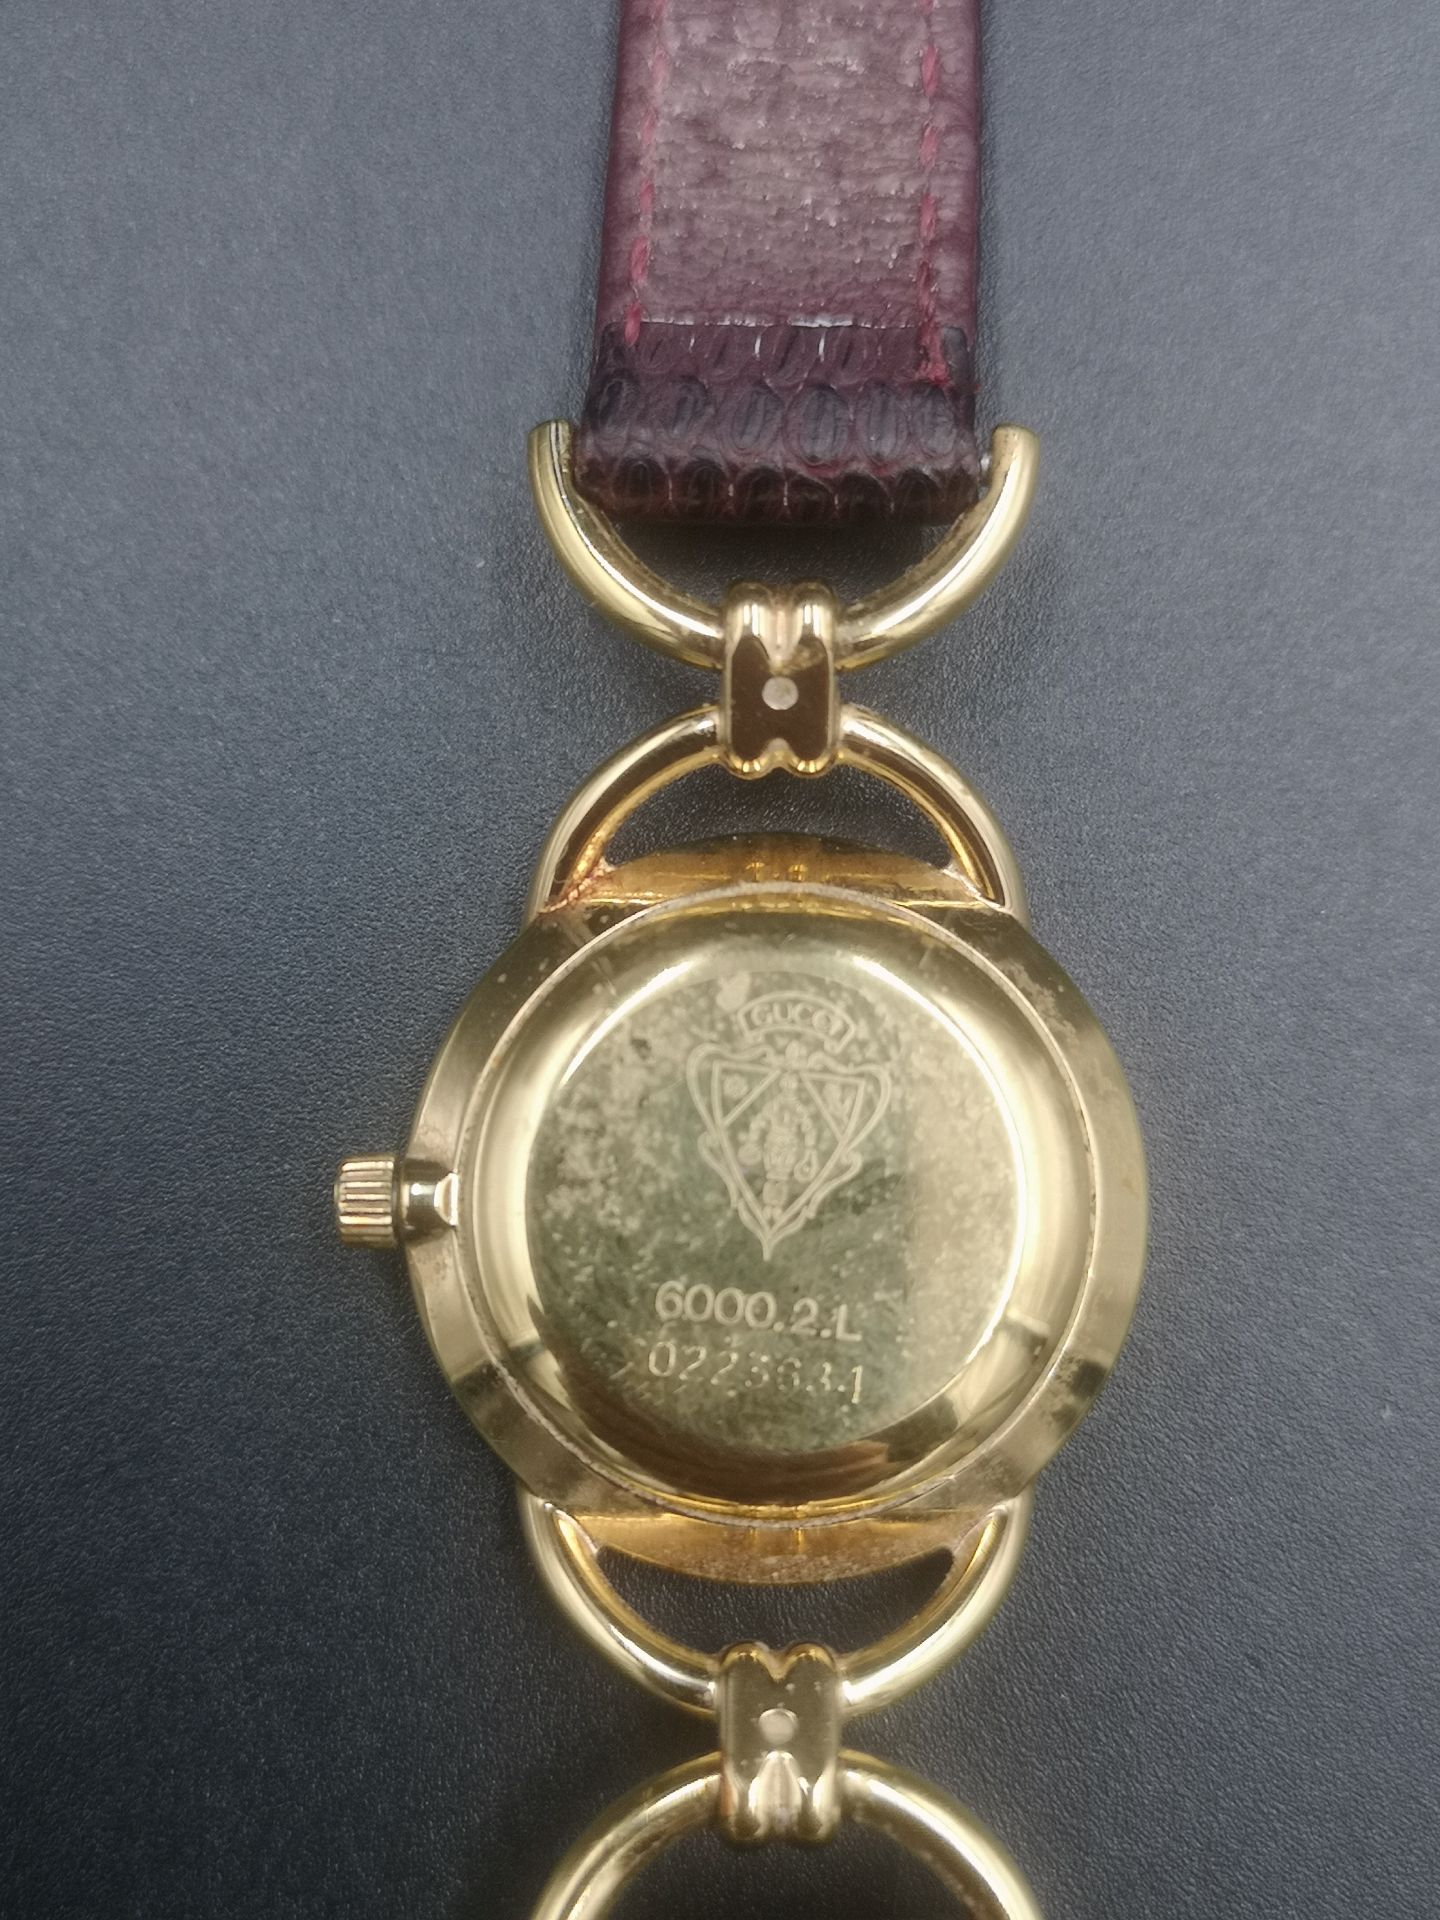 Gucci ladies quartz wrist watch in original box. - Image 4 of 6